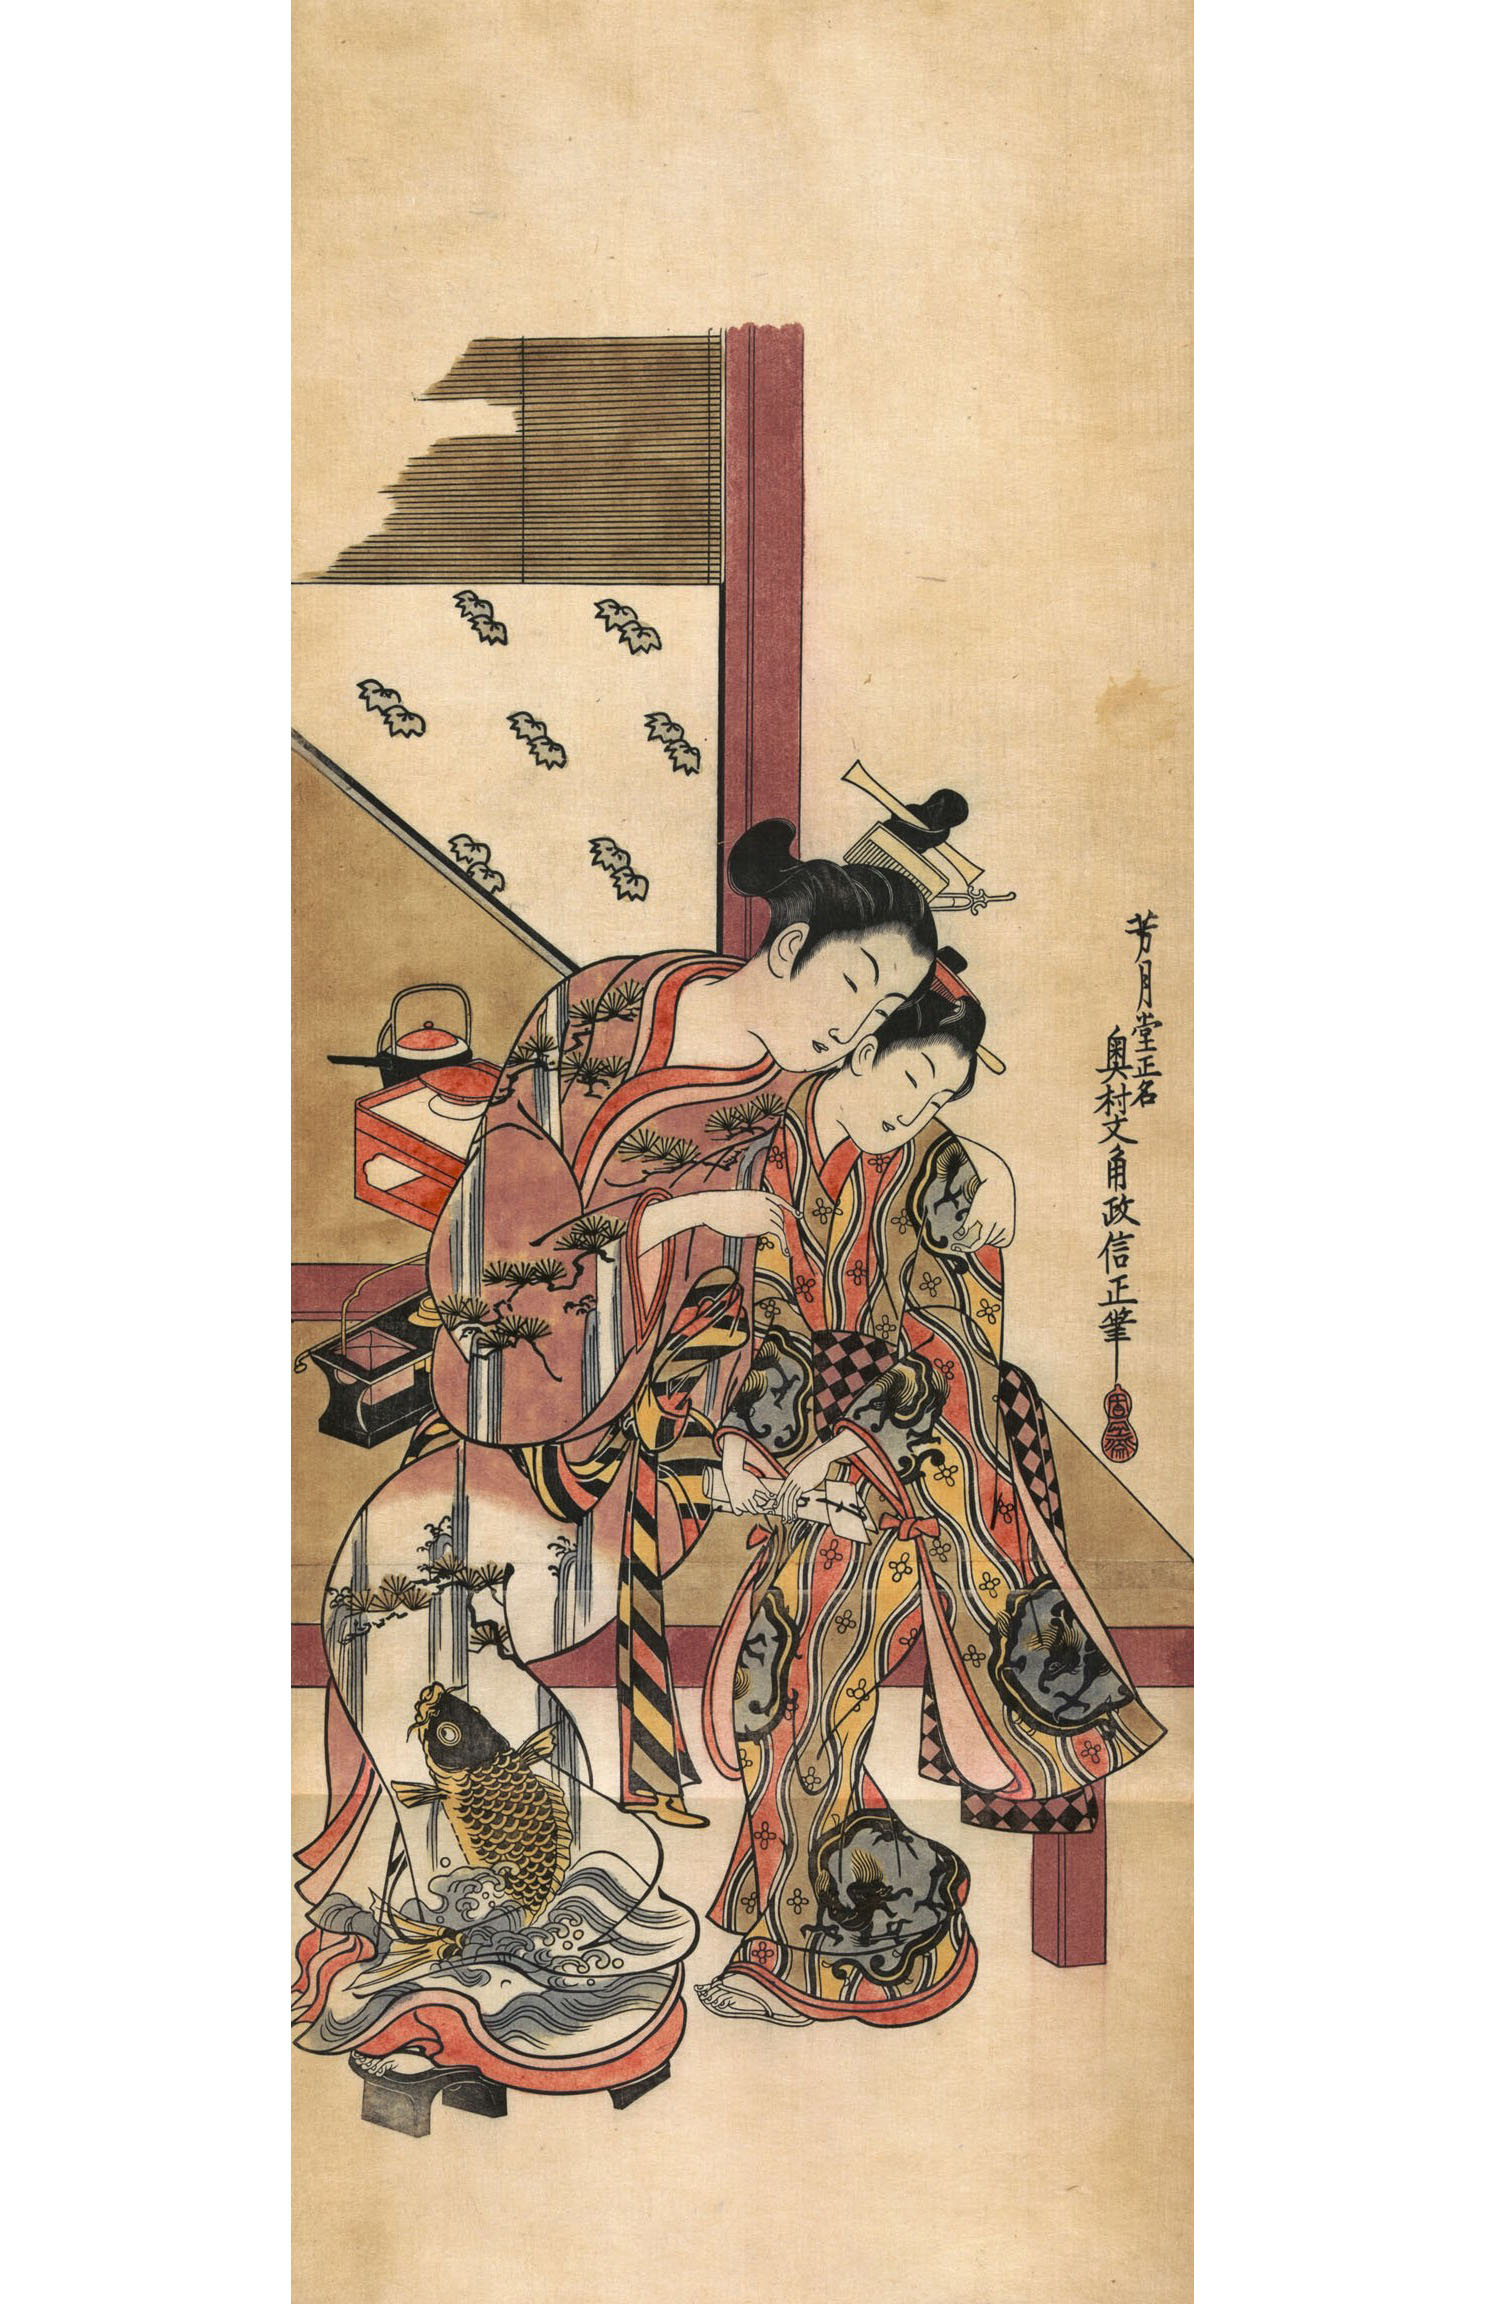 Окумура Масанобу. "Две девушки шепчутся". 1743.